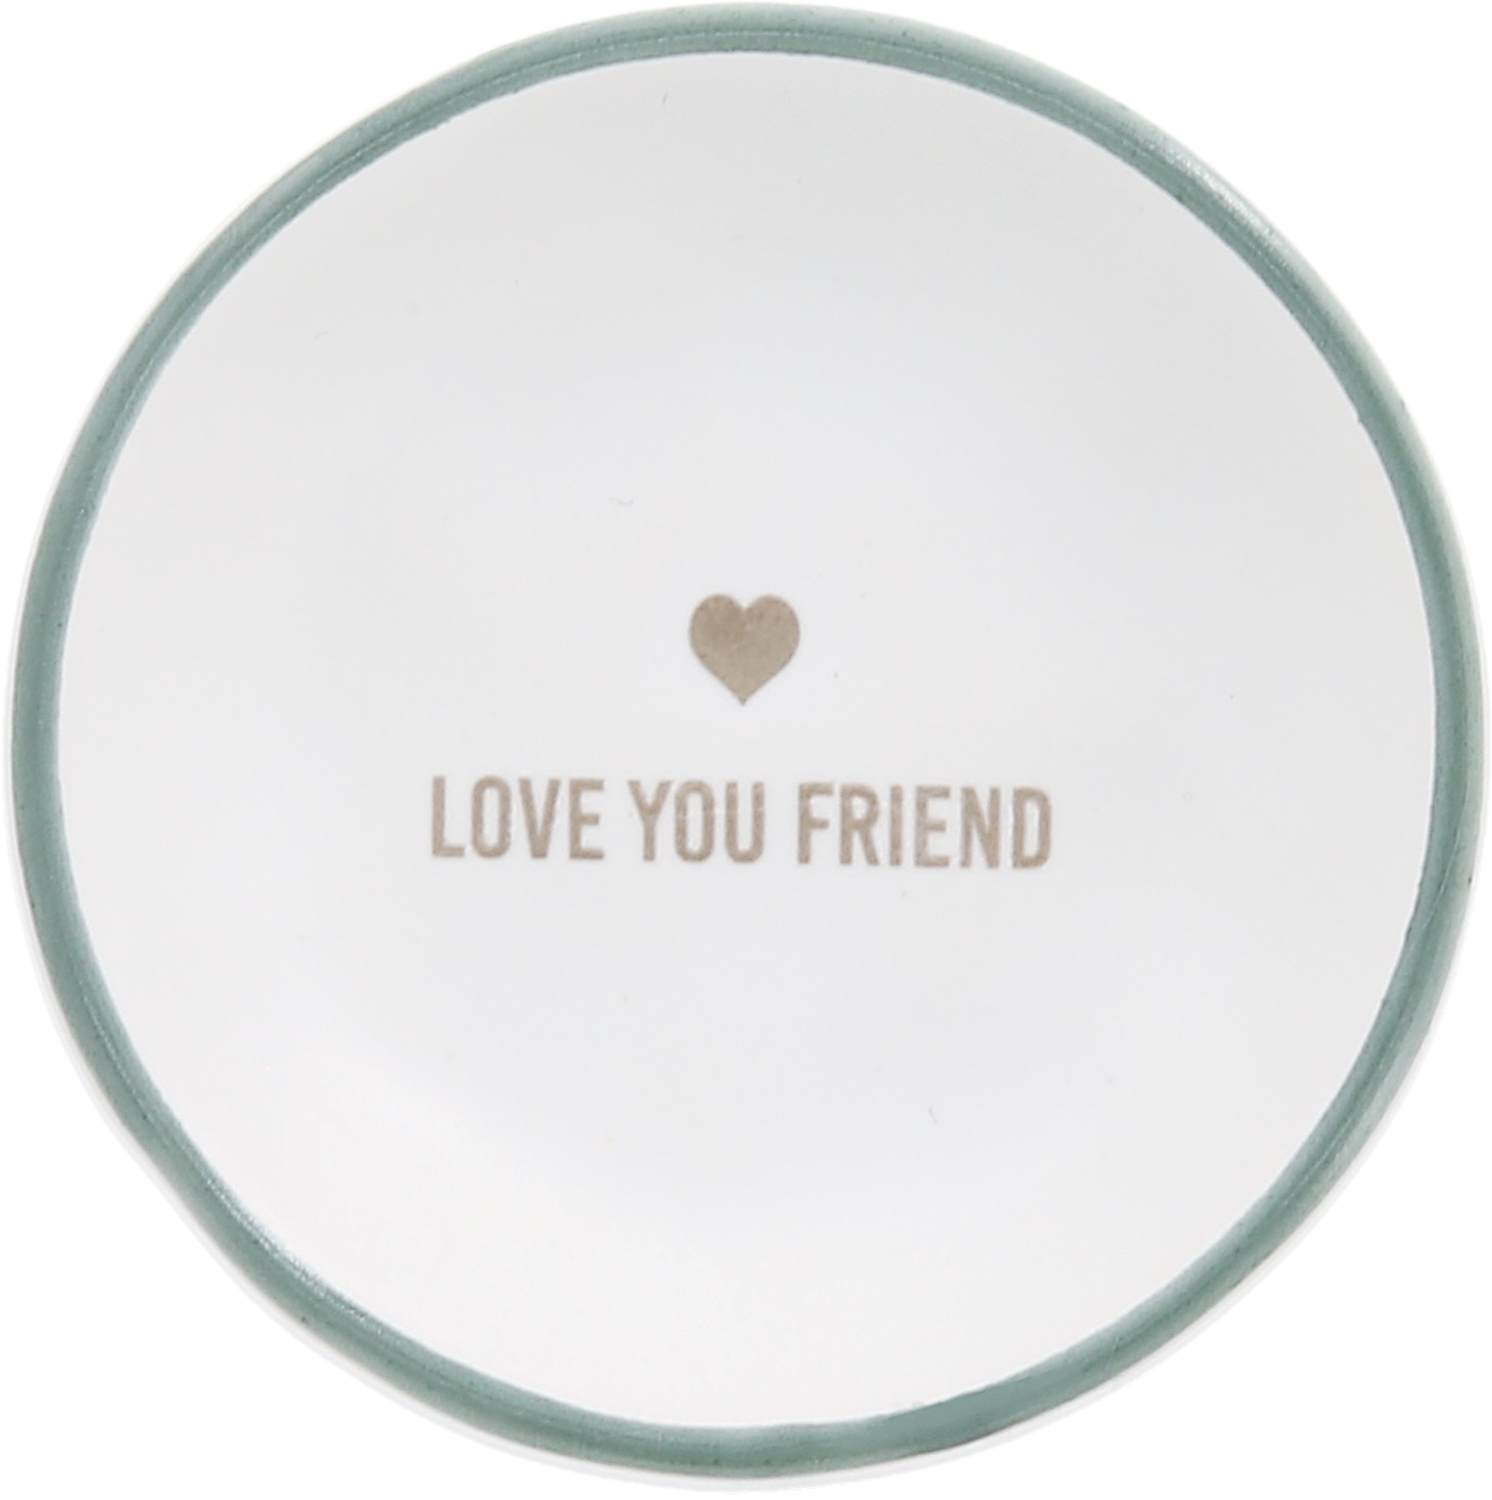 Love You Friend by Love You - Love You Friend - 2.5" Trinket Dish